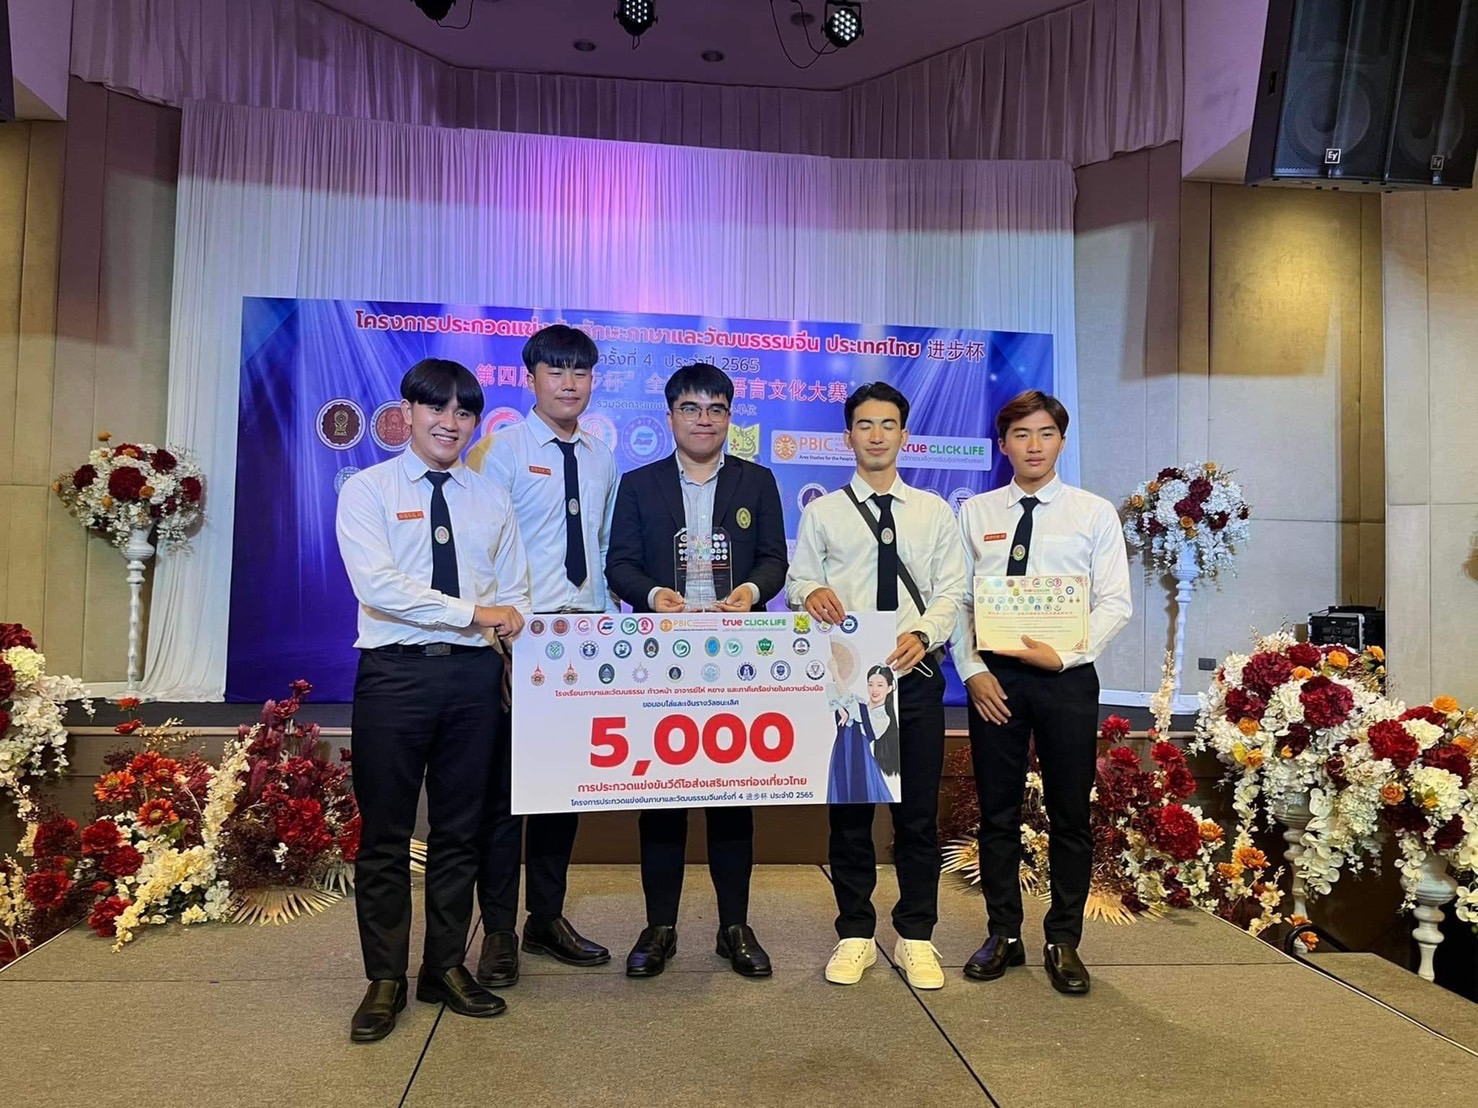 [นศ.คณะมนุษยศาสตร์ มร.ชร. คว้ารางวัลชนะเลิศการประกวดแข่งขันทักษะภาษาและวัฒนธรรมจีน ประเทศไทย ครั้งที่ 4 ประจำปี 2565 ]